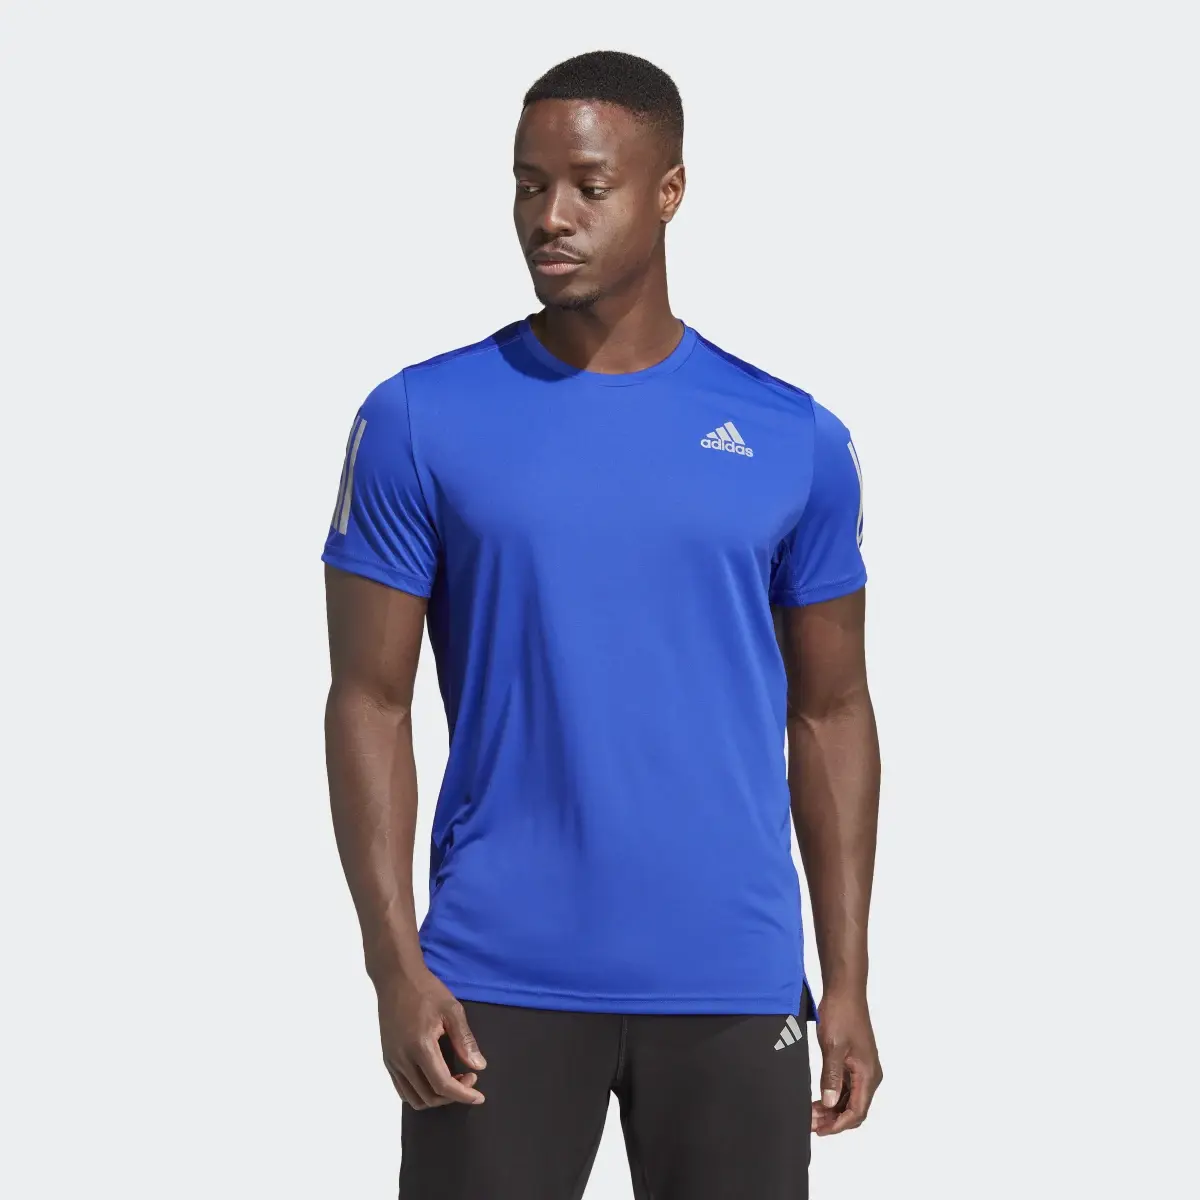 Adidas Own the Run T-Shirt. 2